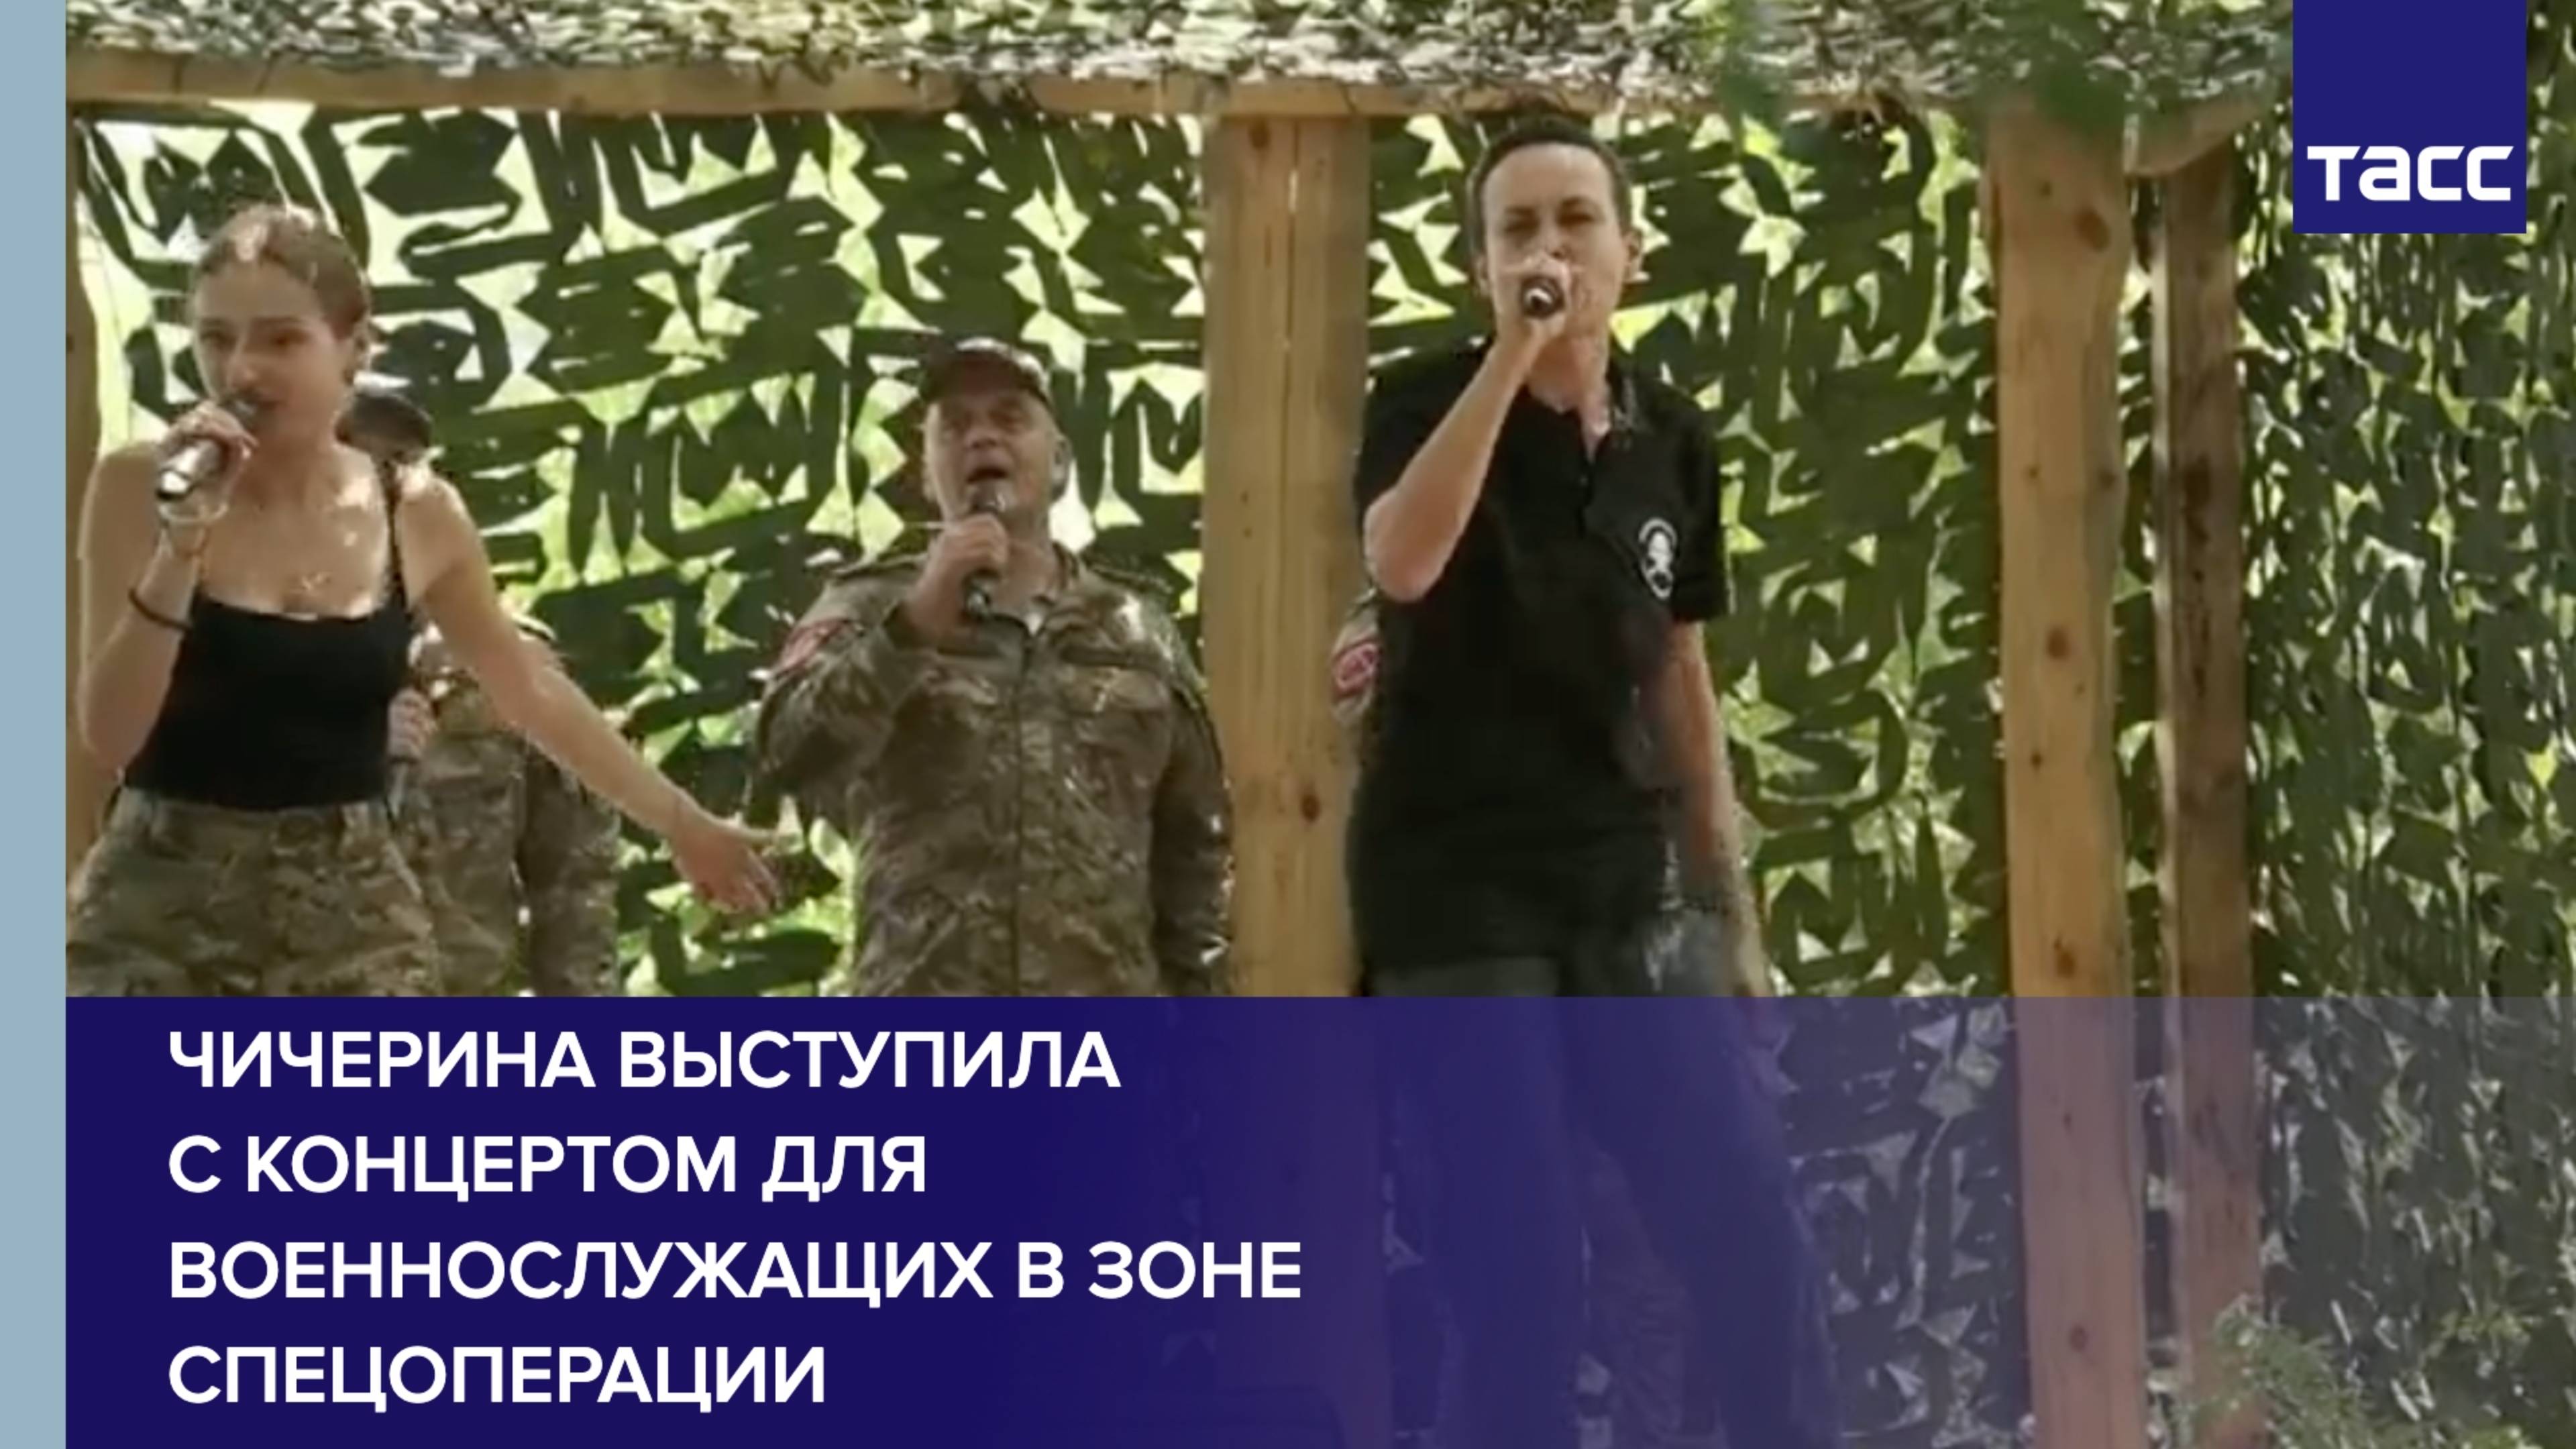 Чичерина выступила с концертом для военнослужащих в зоне спецоперации